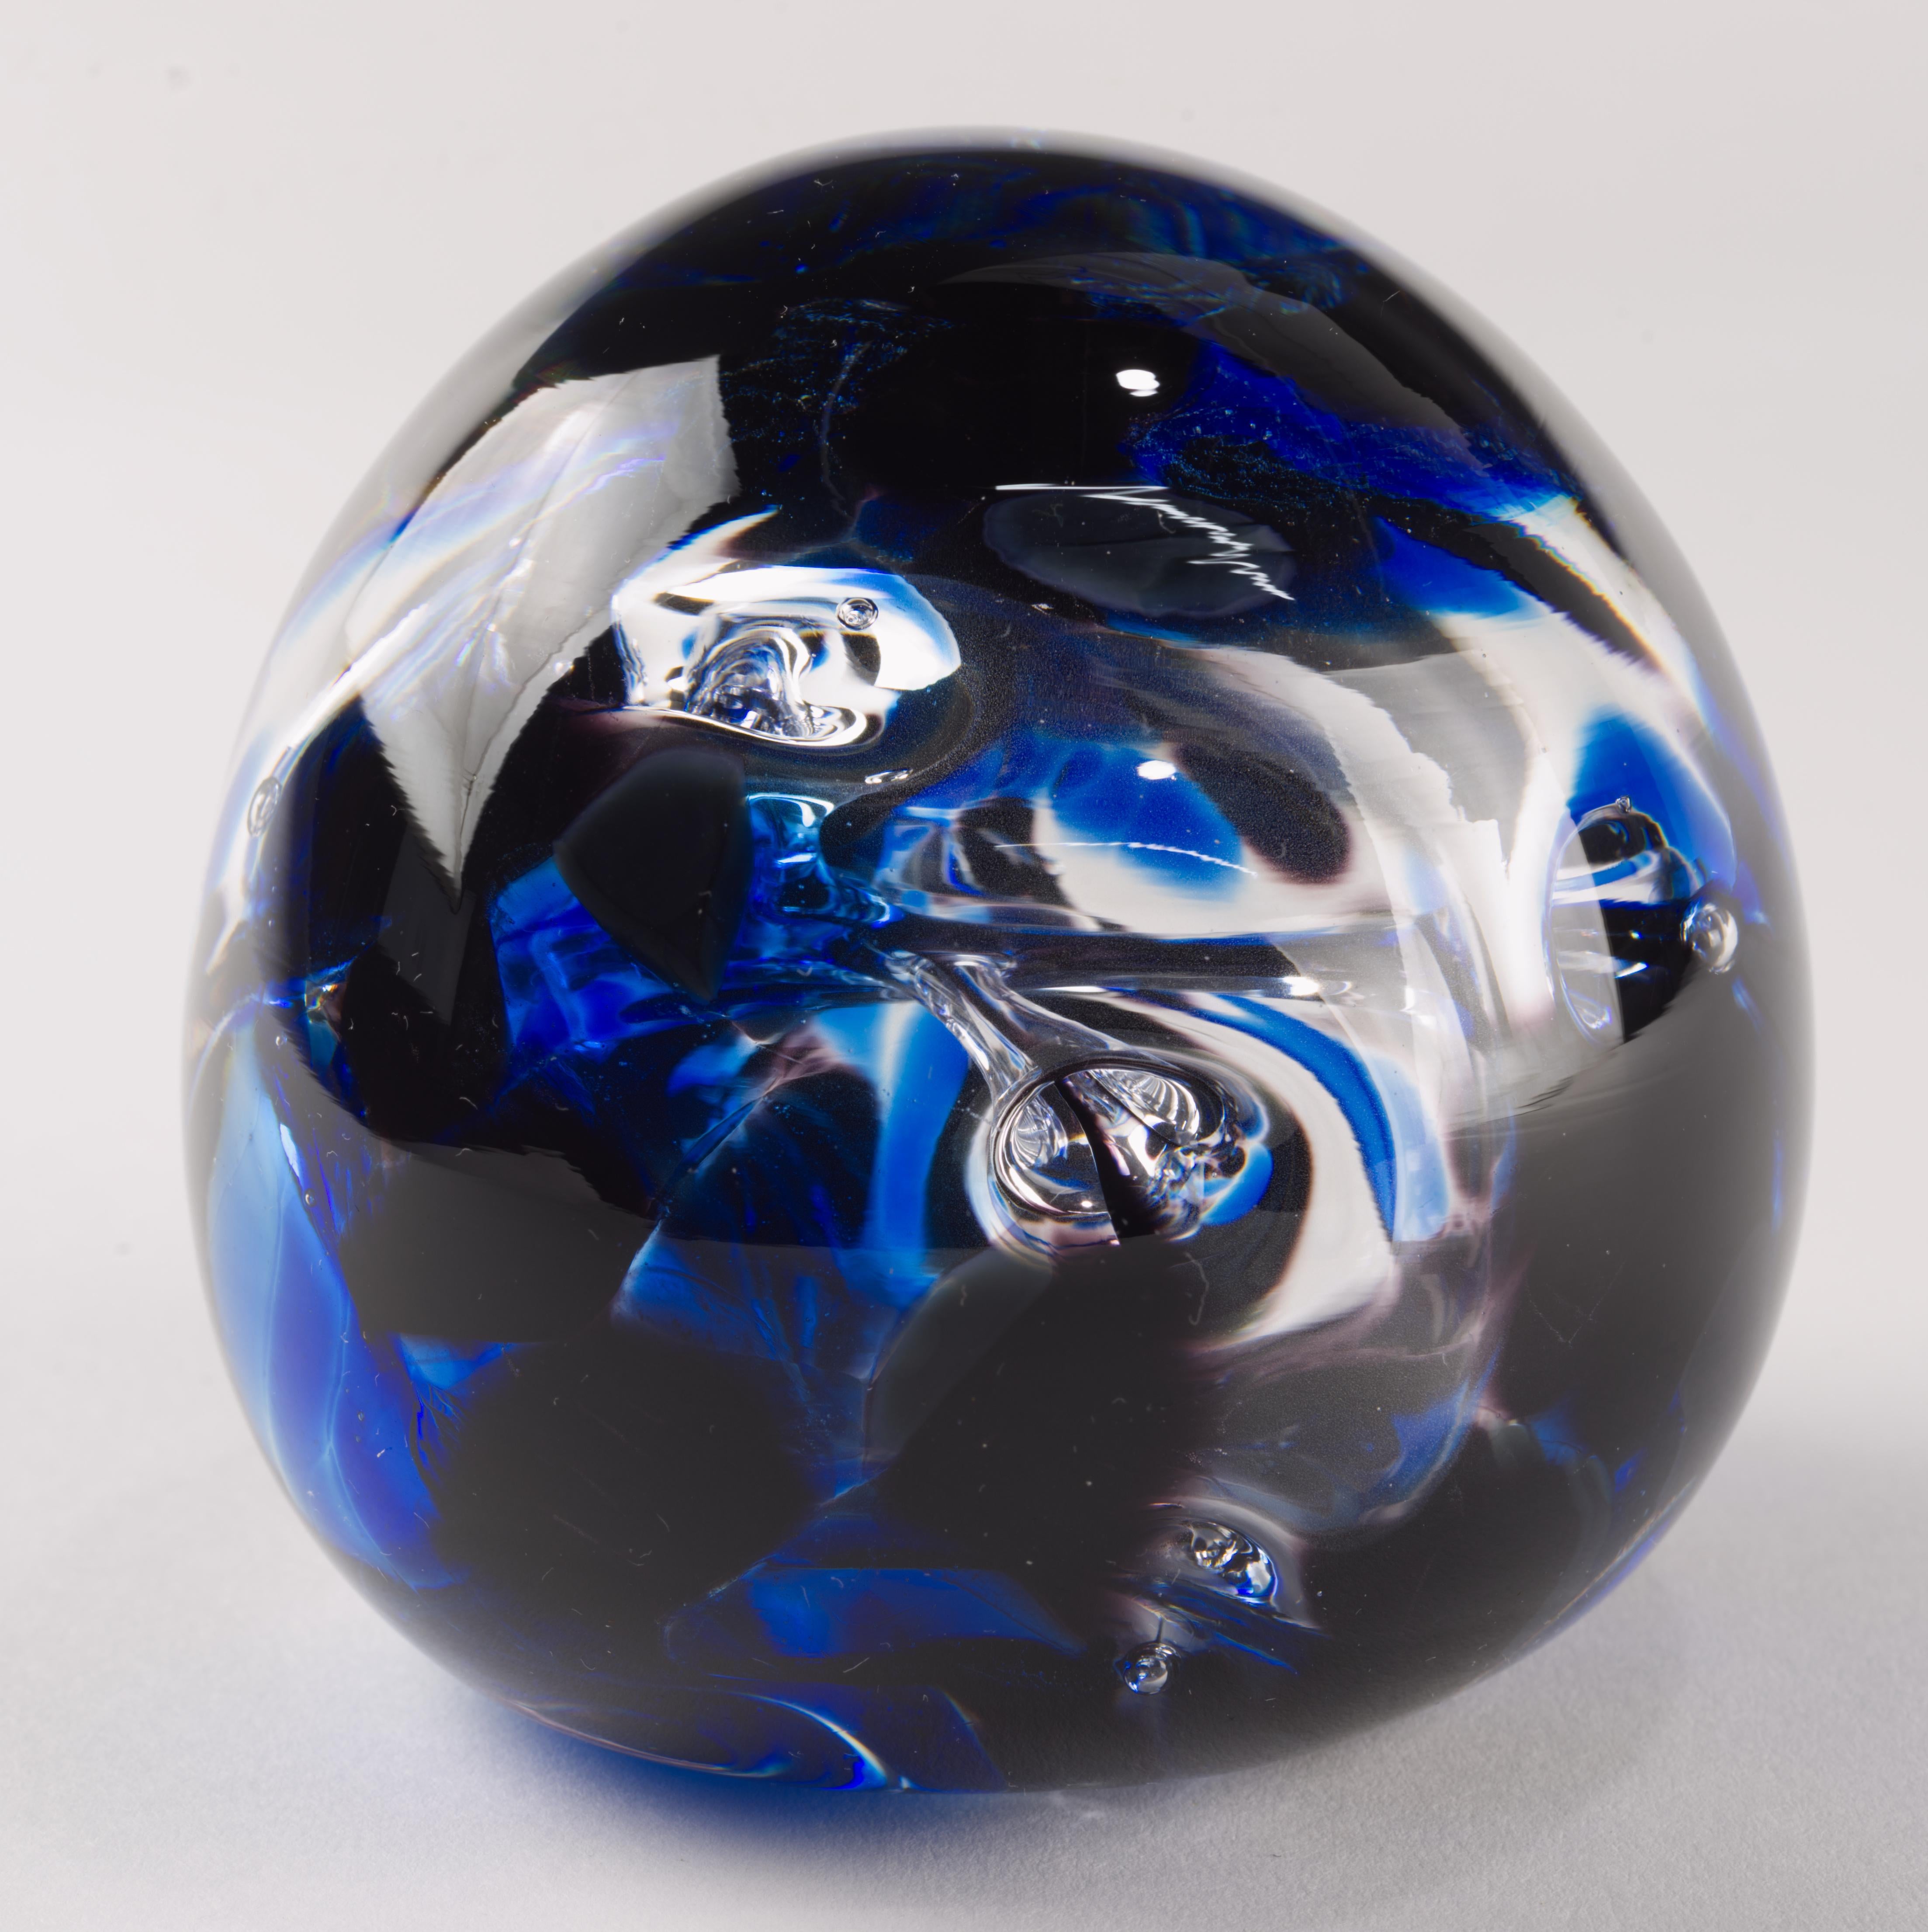  Großer moderner Studio Art Briefbeschwerer aus kobaltblauem und klarem Glas mit kontrollierten Blasen, die ein abstraktes biomorphes Formelement bilden. Das Stück ist handgefertigt und vom Künstler auf der Unterseite signiert. 

Der Briefbeschwerer